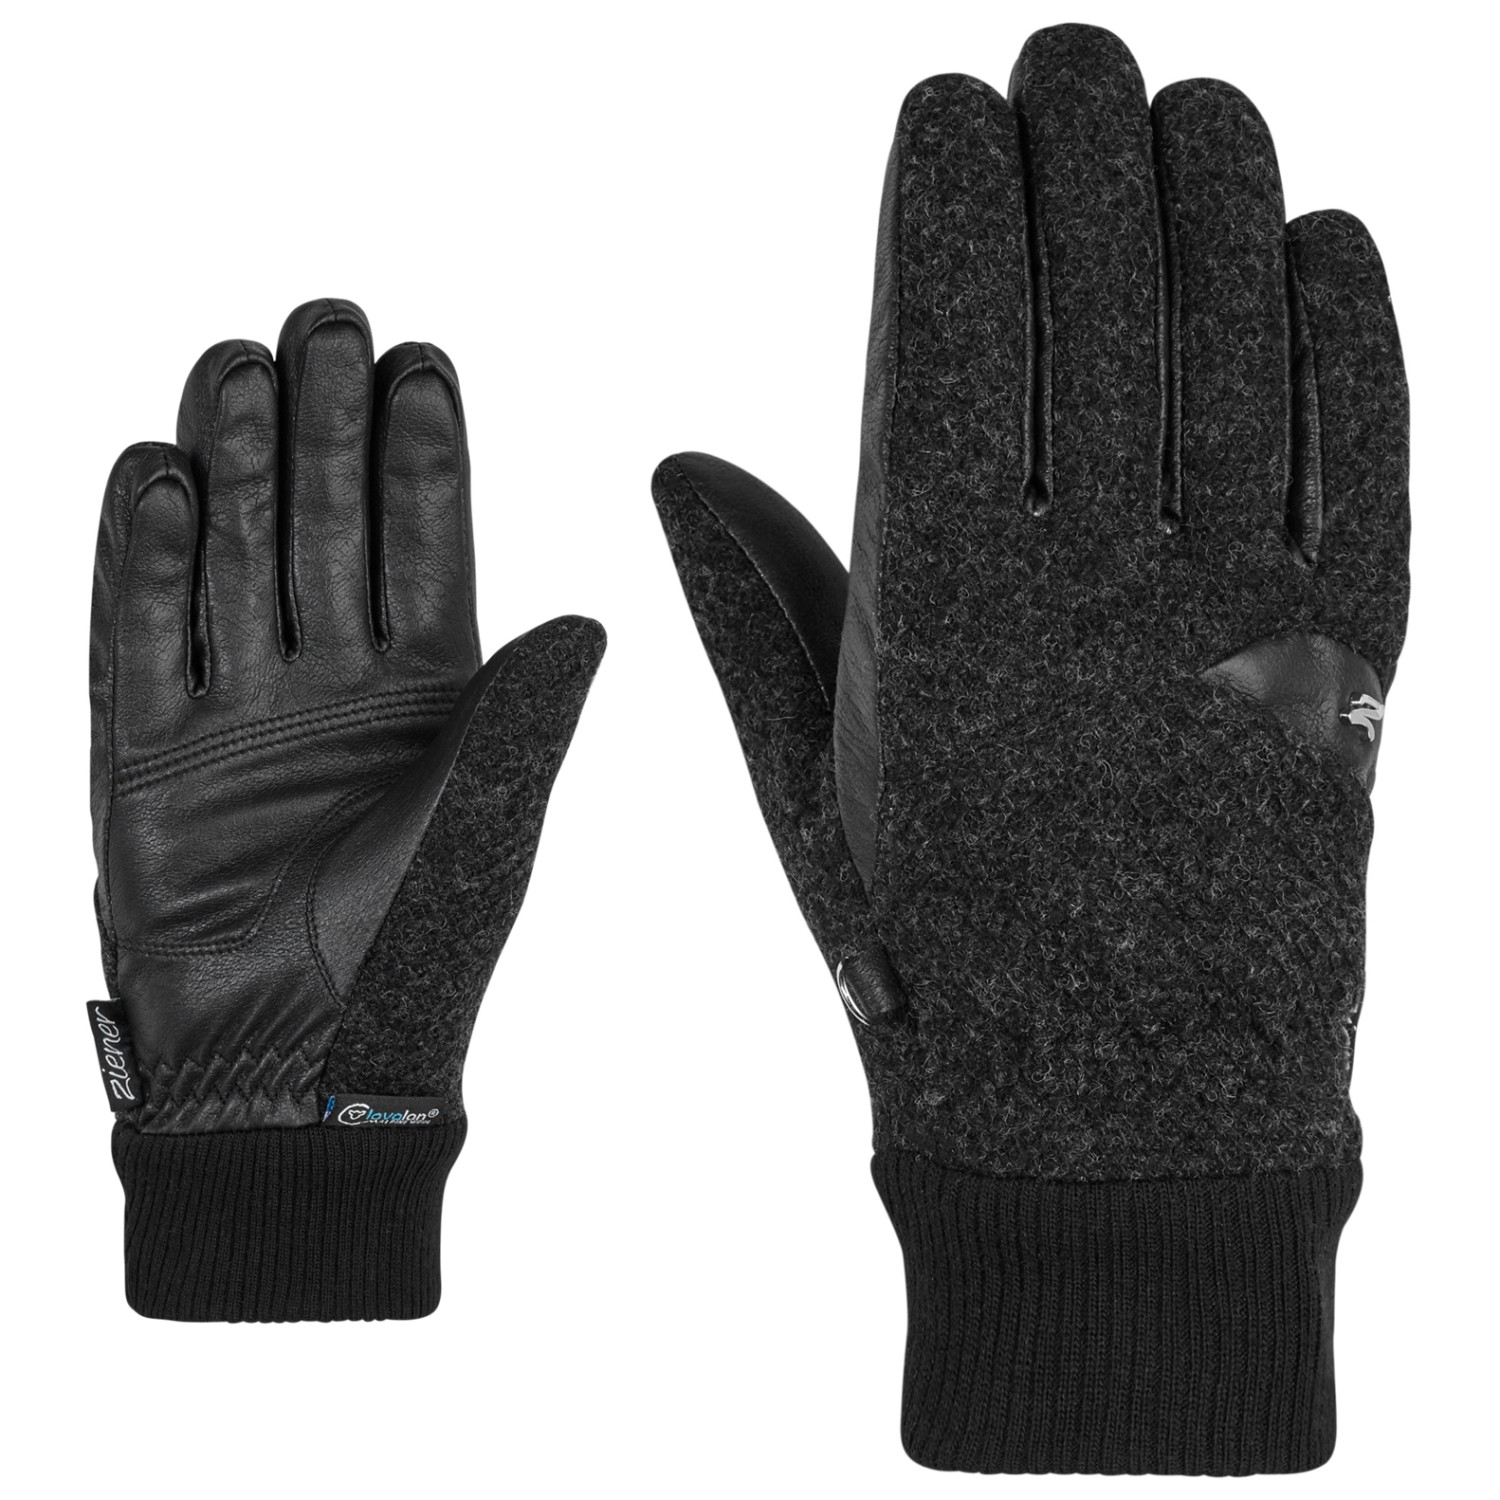 Перчатки Ziener Women's Iruki AW Glove Multisport, цвет Dark Melange